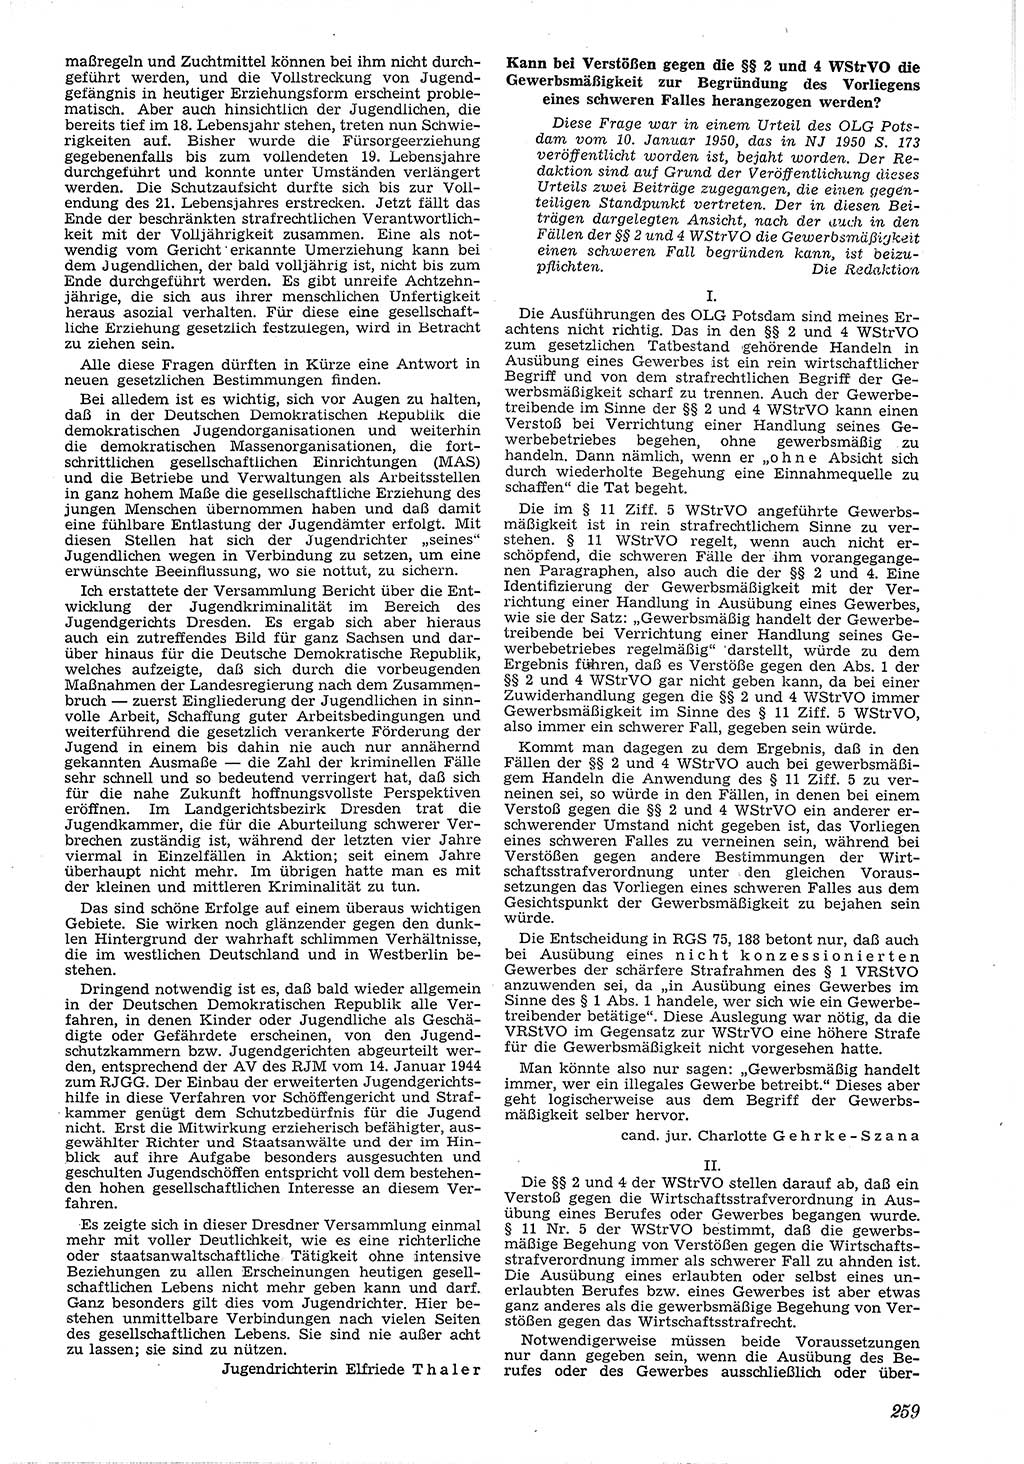 Neue Justiz (NJ), Zeitschrift für Recht und Rechtswissenschaft [Deutsche Demokratische Republik (DDR)], 4. Jahrgang 1950, Seite 259 (NJ DDR 1950, S. 259)